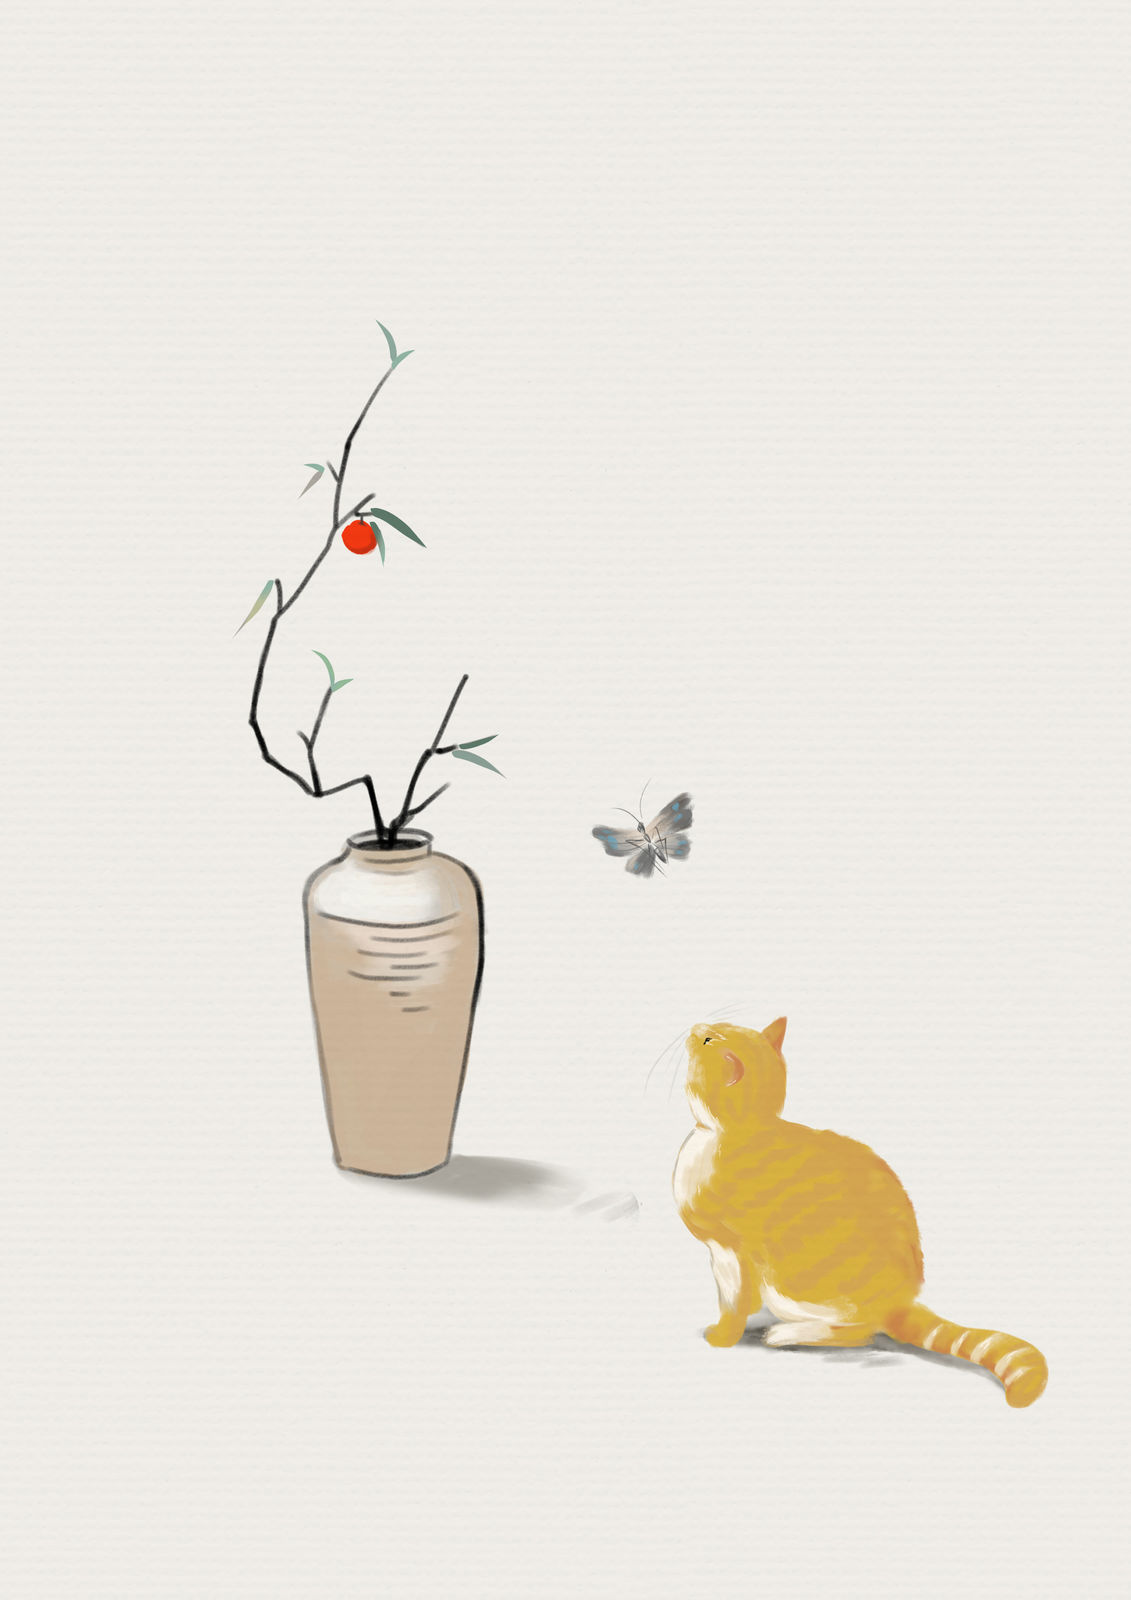 一只猫的春夏秋冬插画图片壁纸